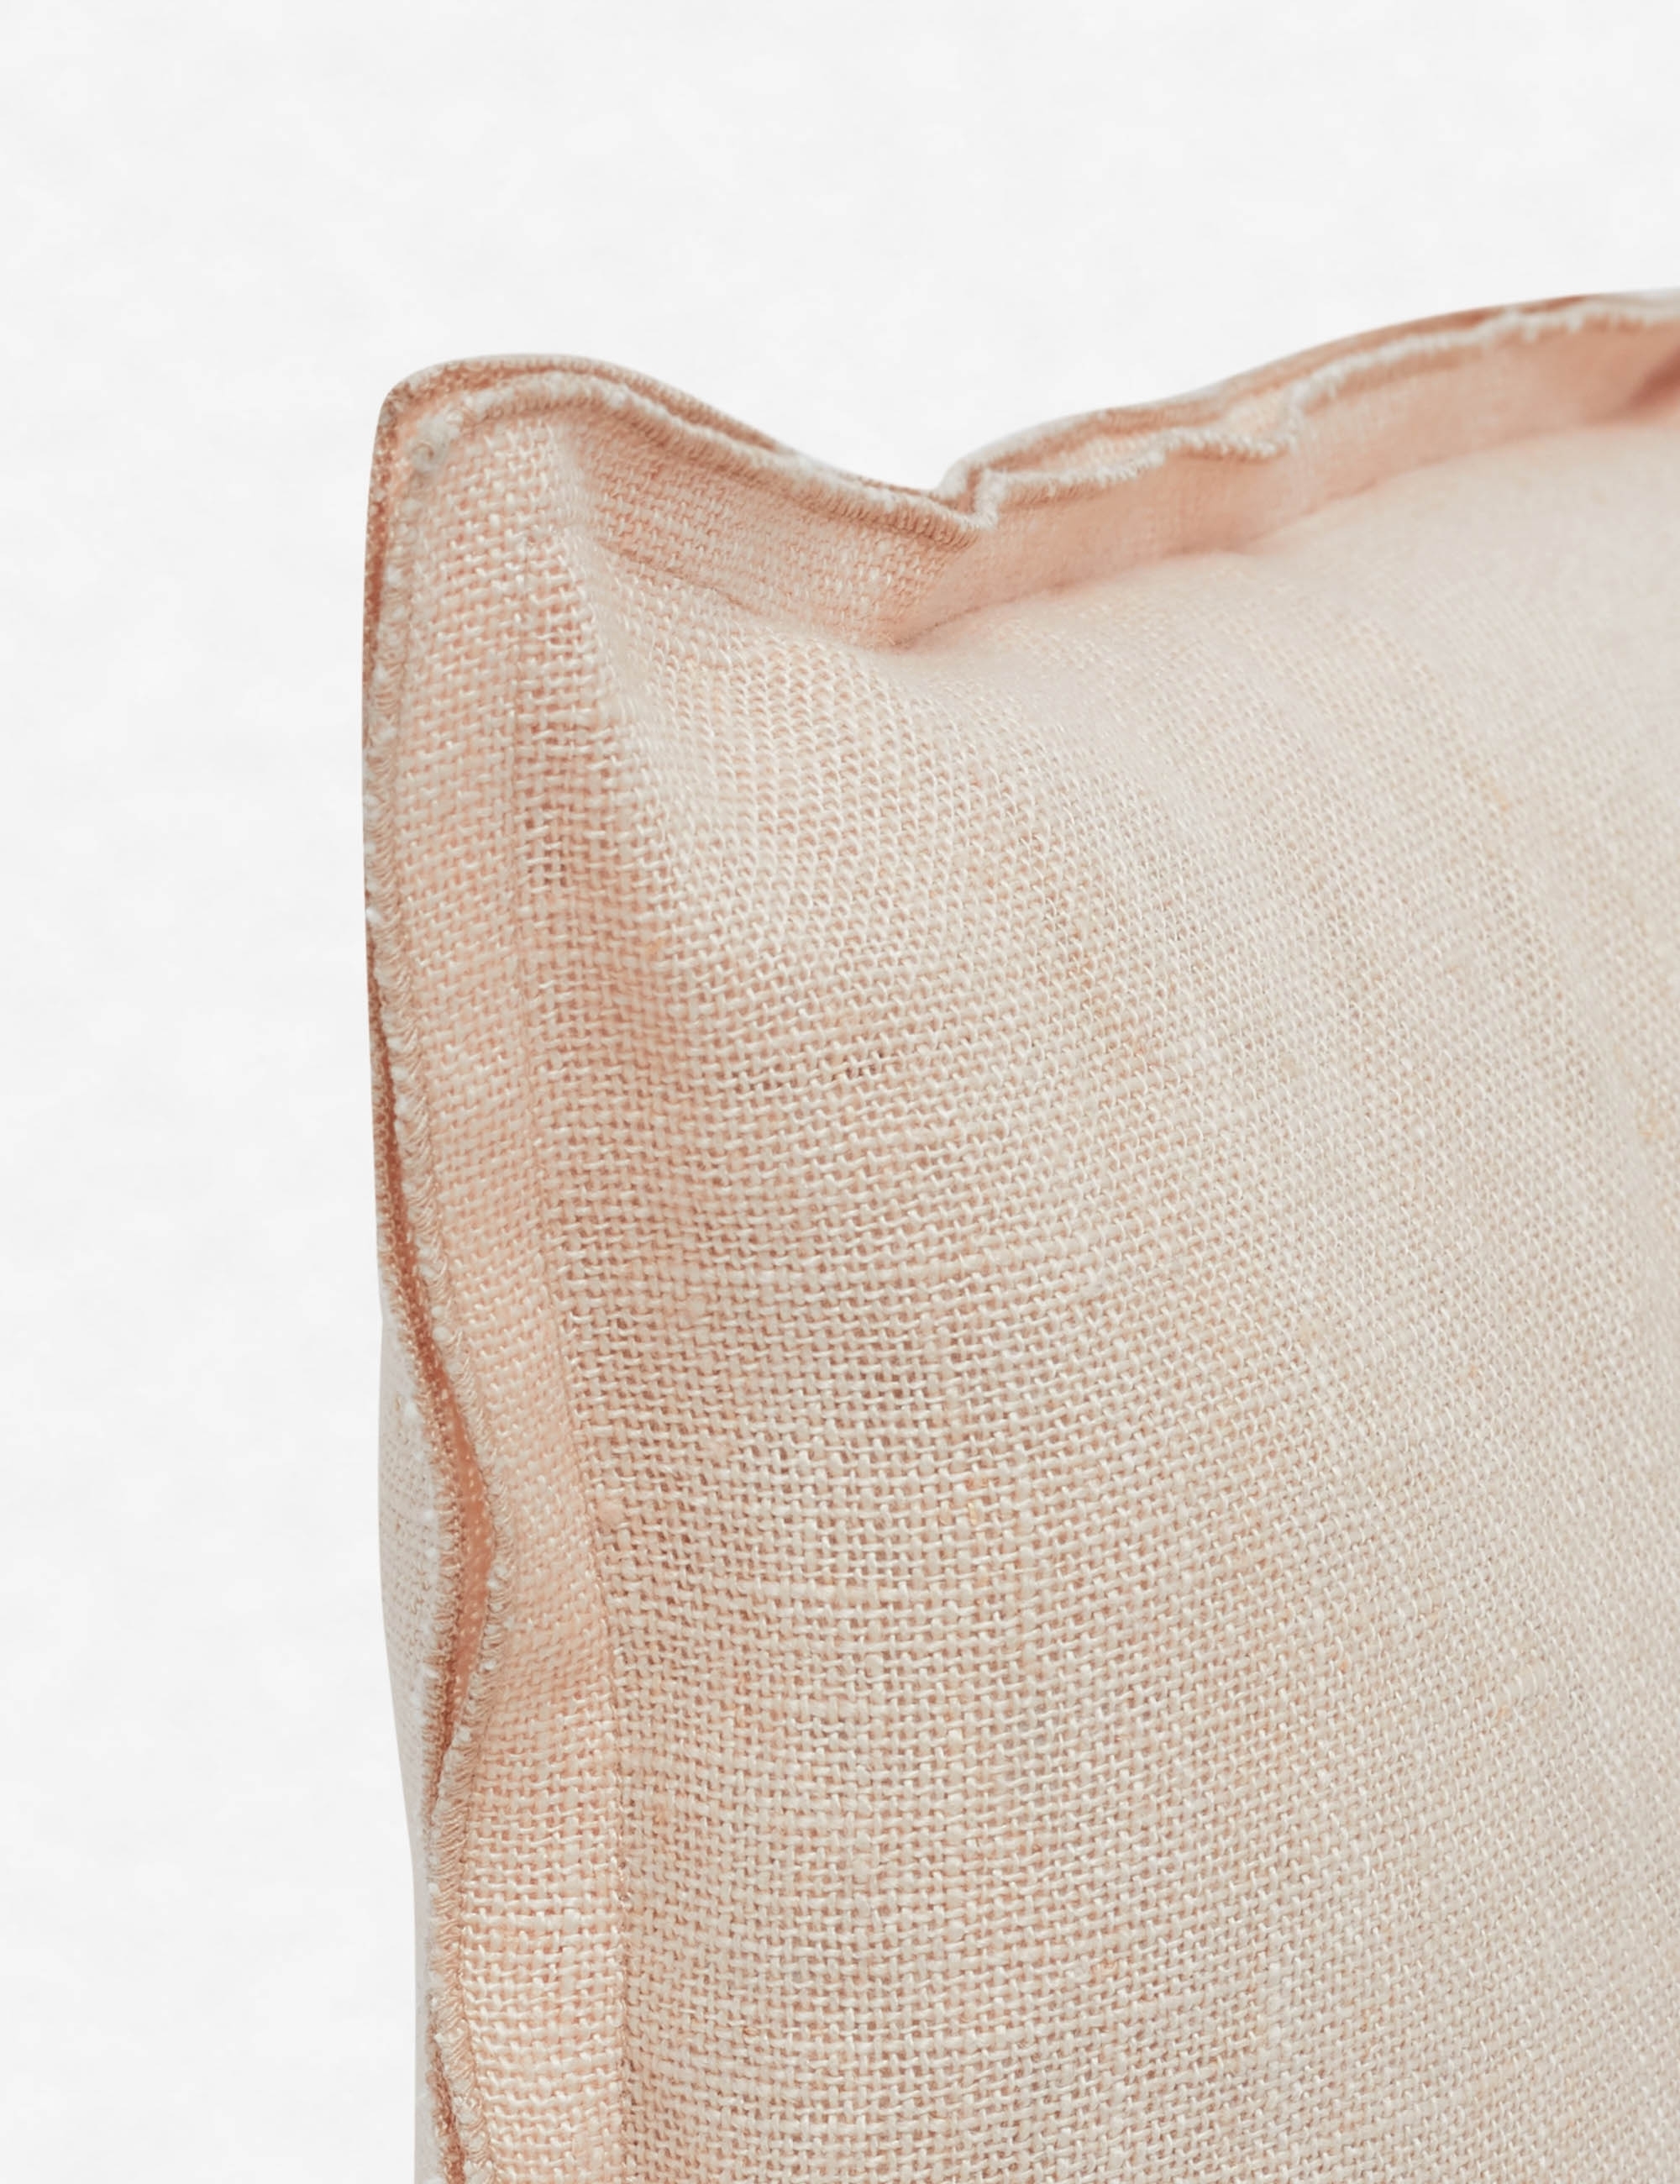 Arlo Linen Long Lumbar Pillow, Blush - Image 1